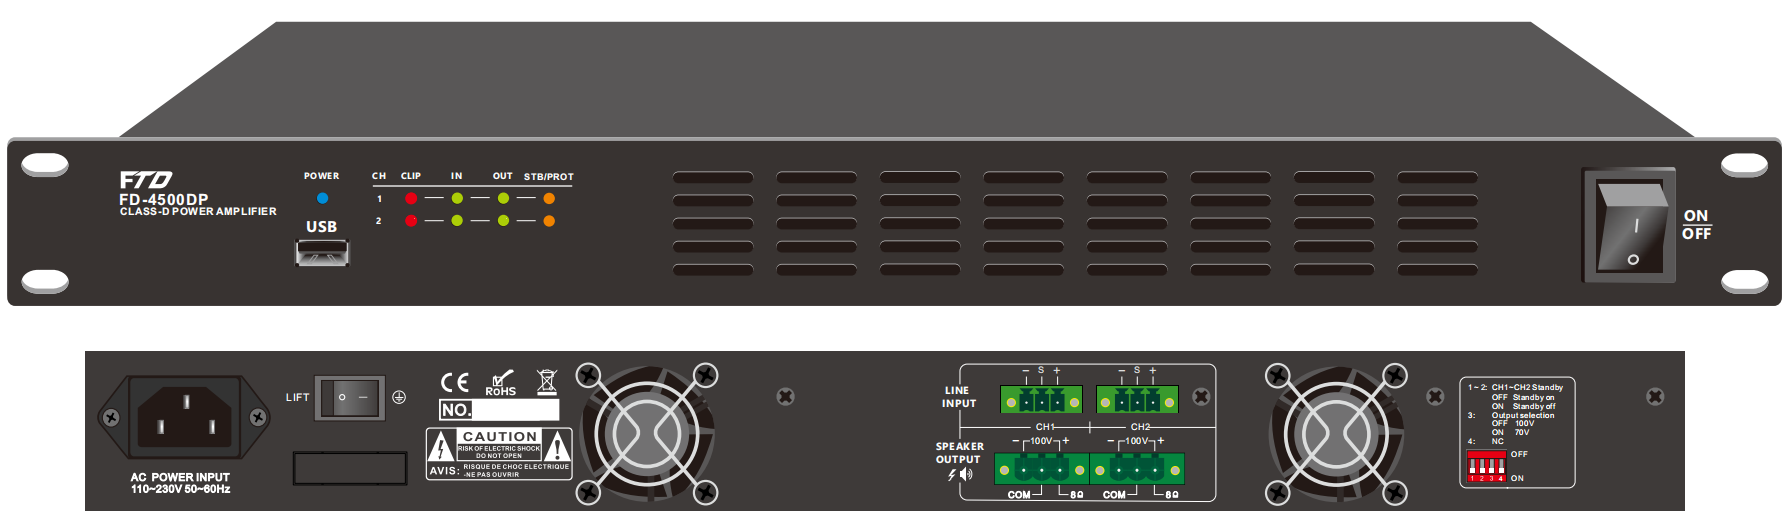 FD-2500DP 2CH 500W Class-D Amplifier with DSP